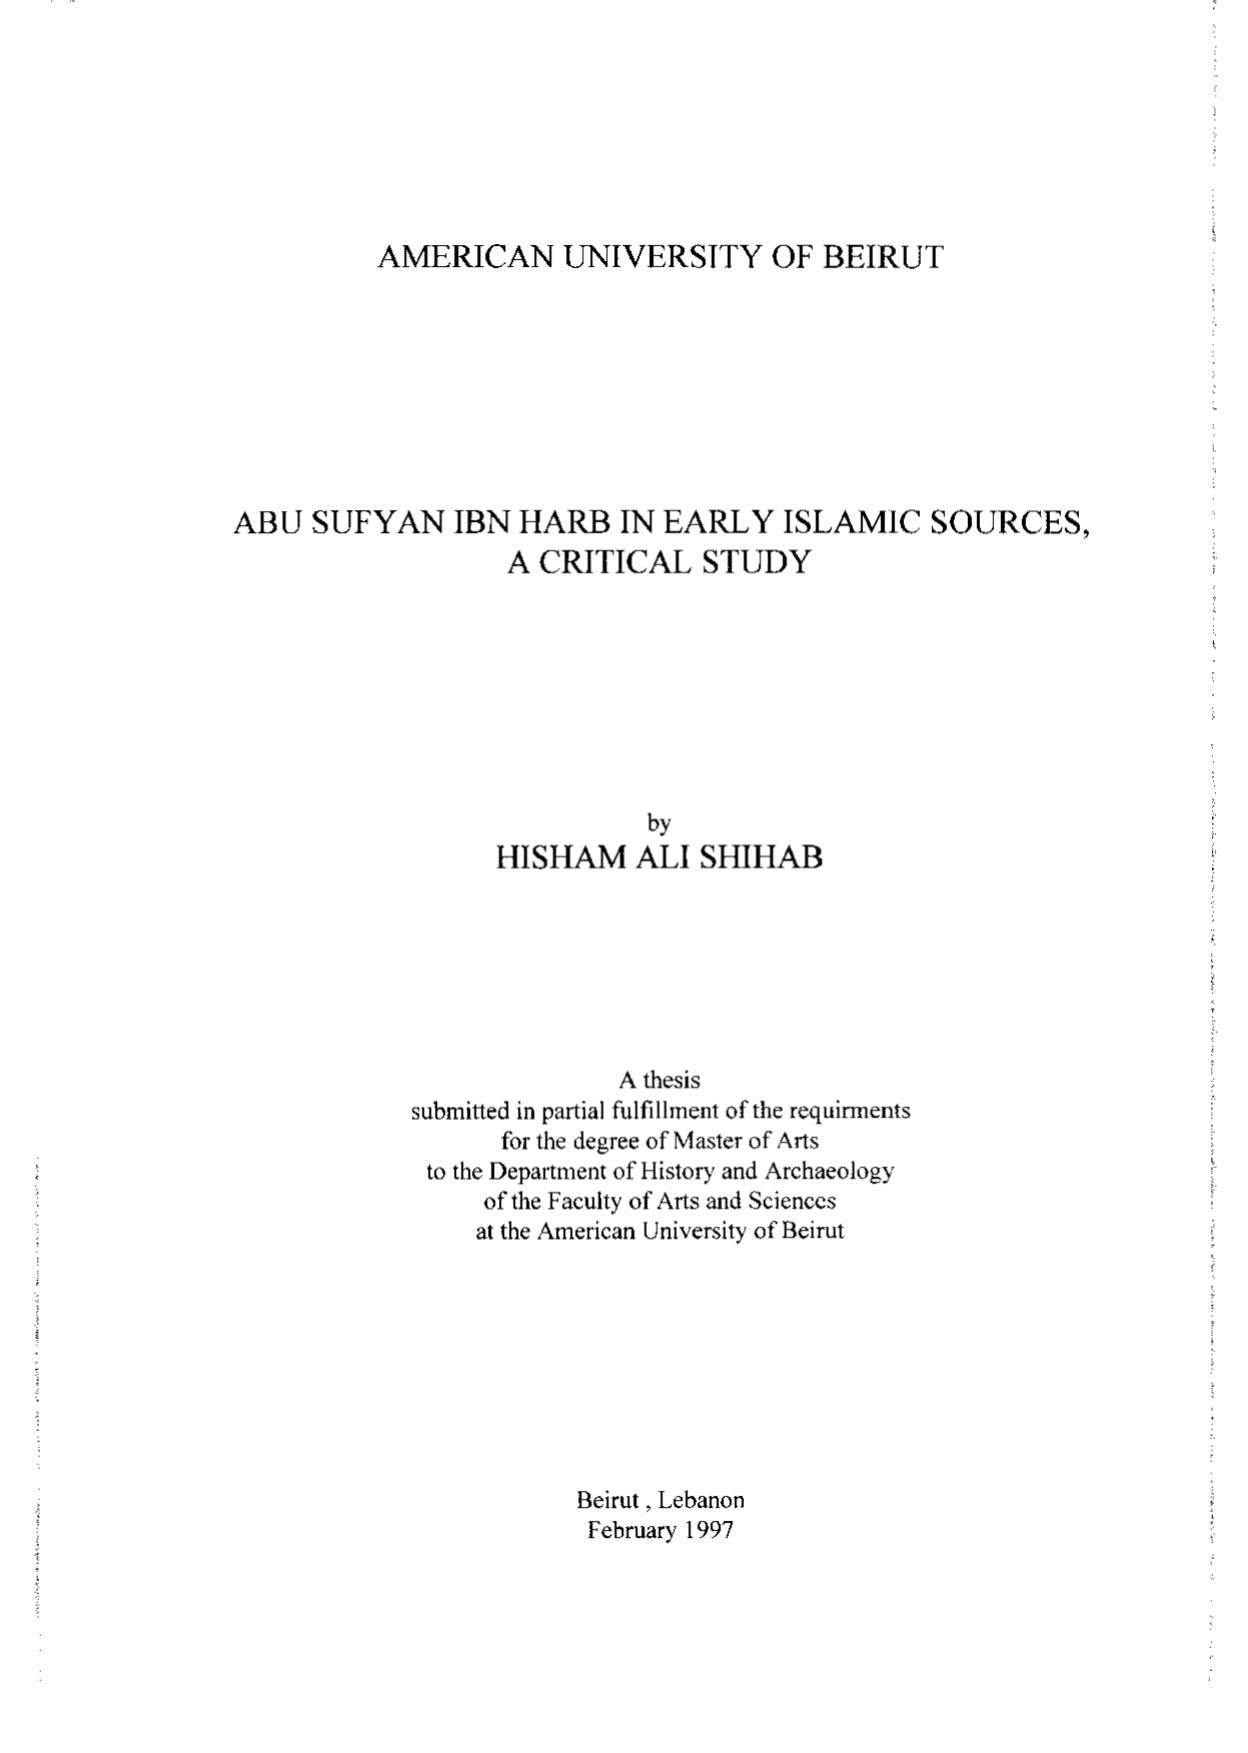 أبو سفيان بن حرب في المصادر الإسلامية المبكرة _ دراسة ونقد ( رسالة ماجستير )